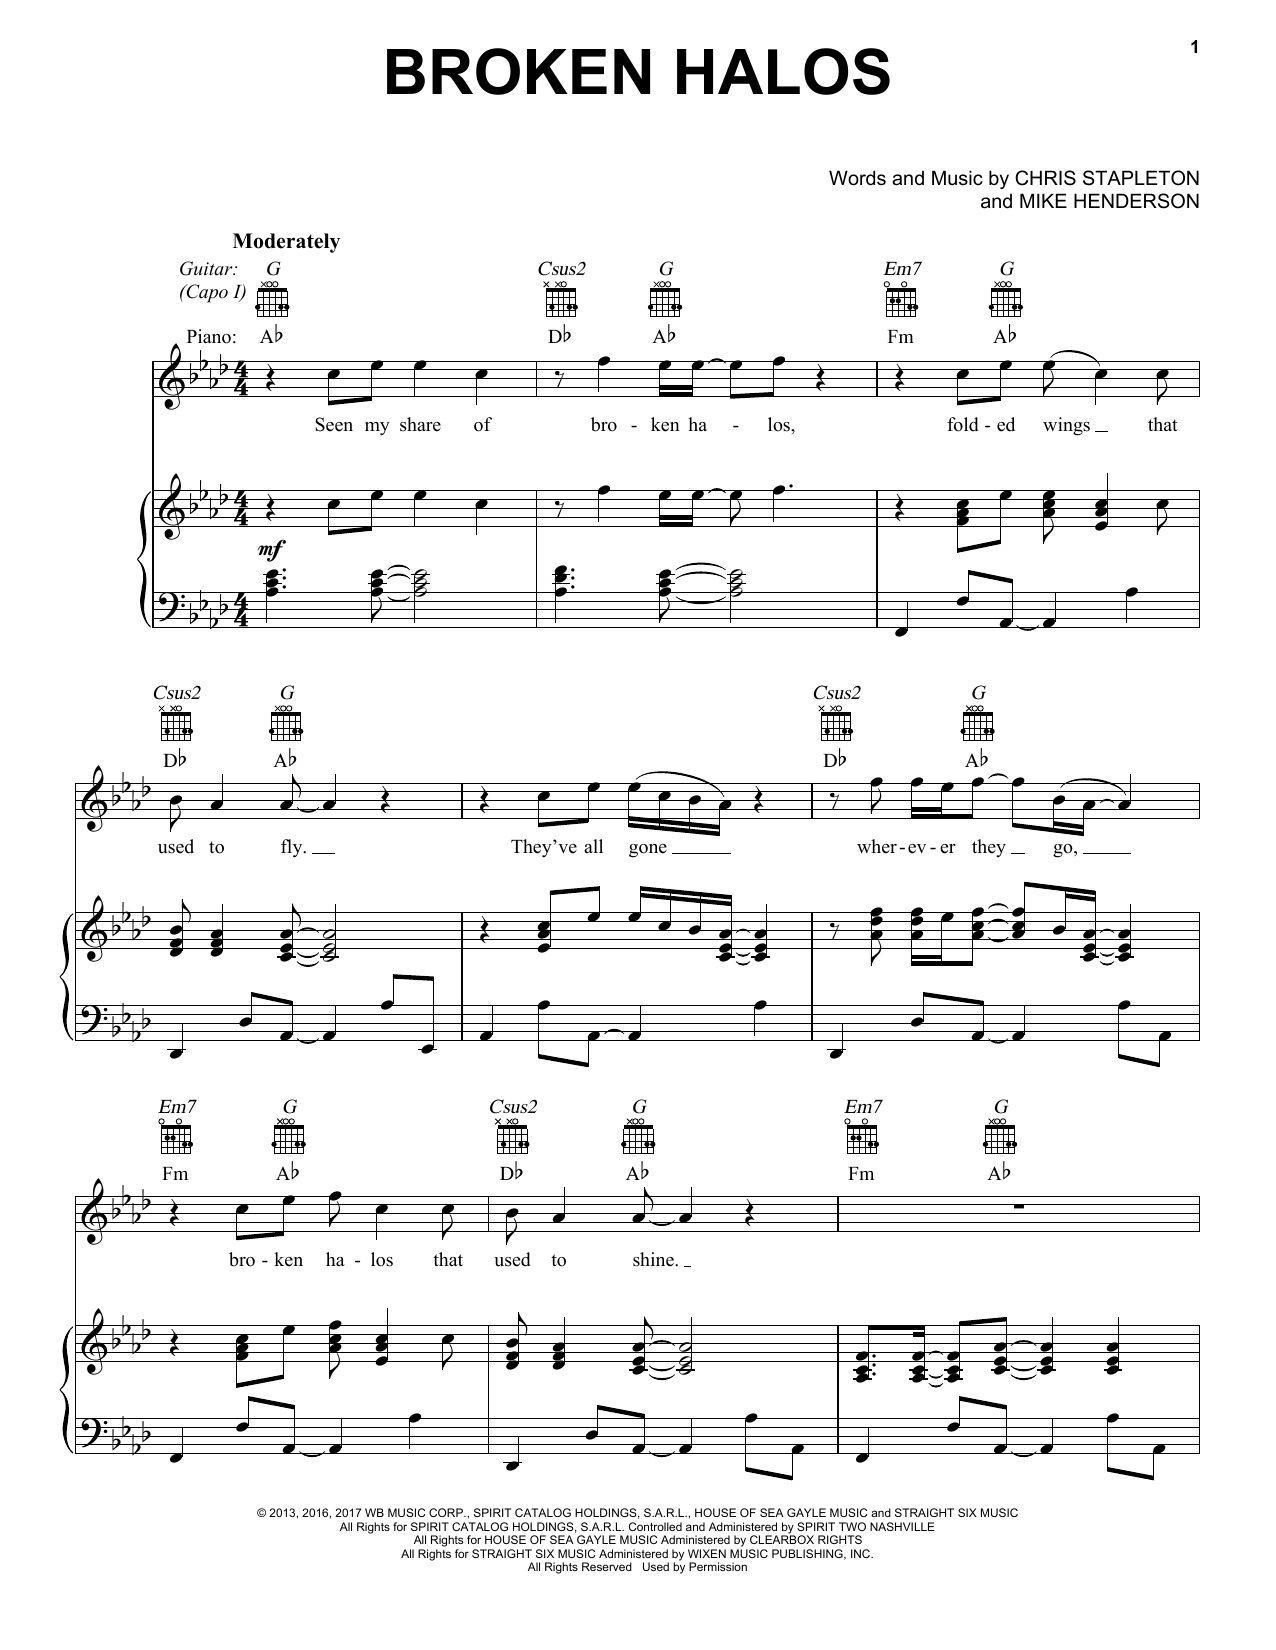 Chris Stapleton Broken Halos Sheet Music Notes & Chords for Lyrics & Chords - Download or Print PDF